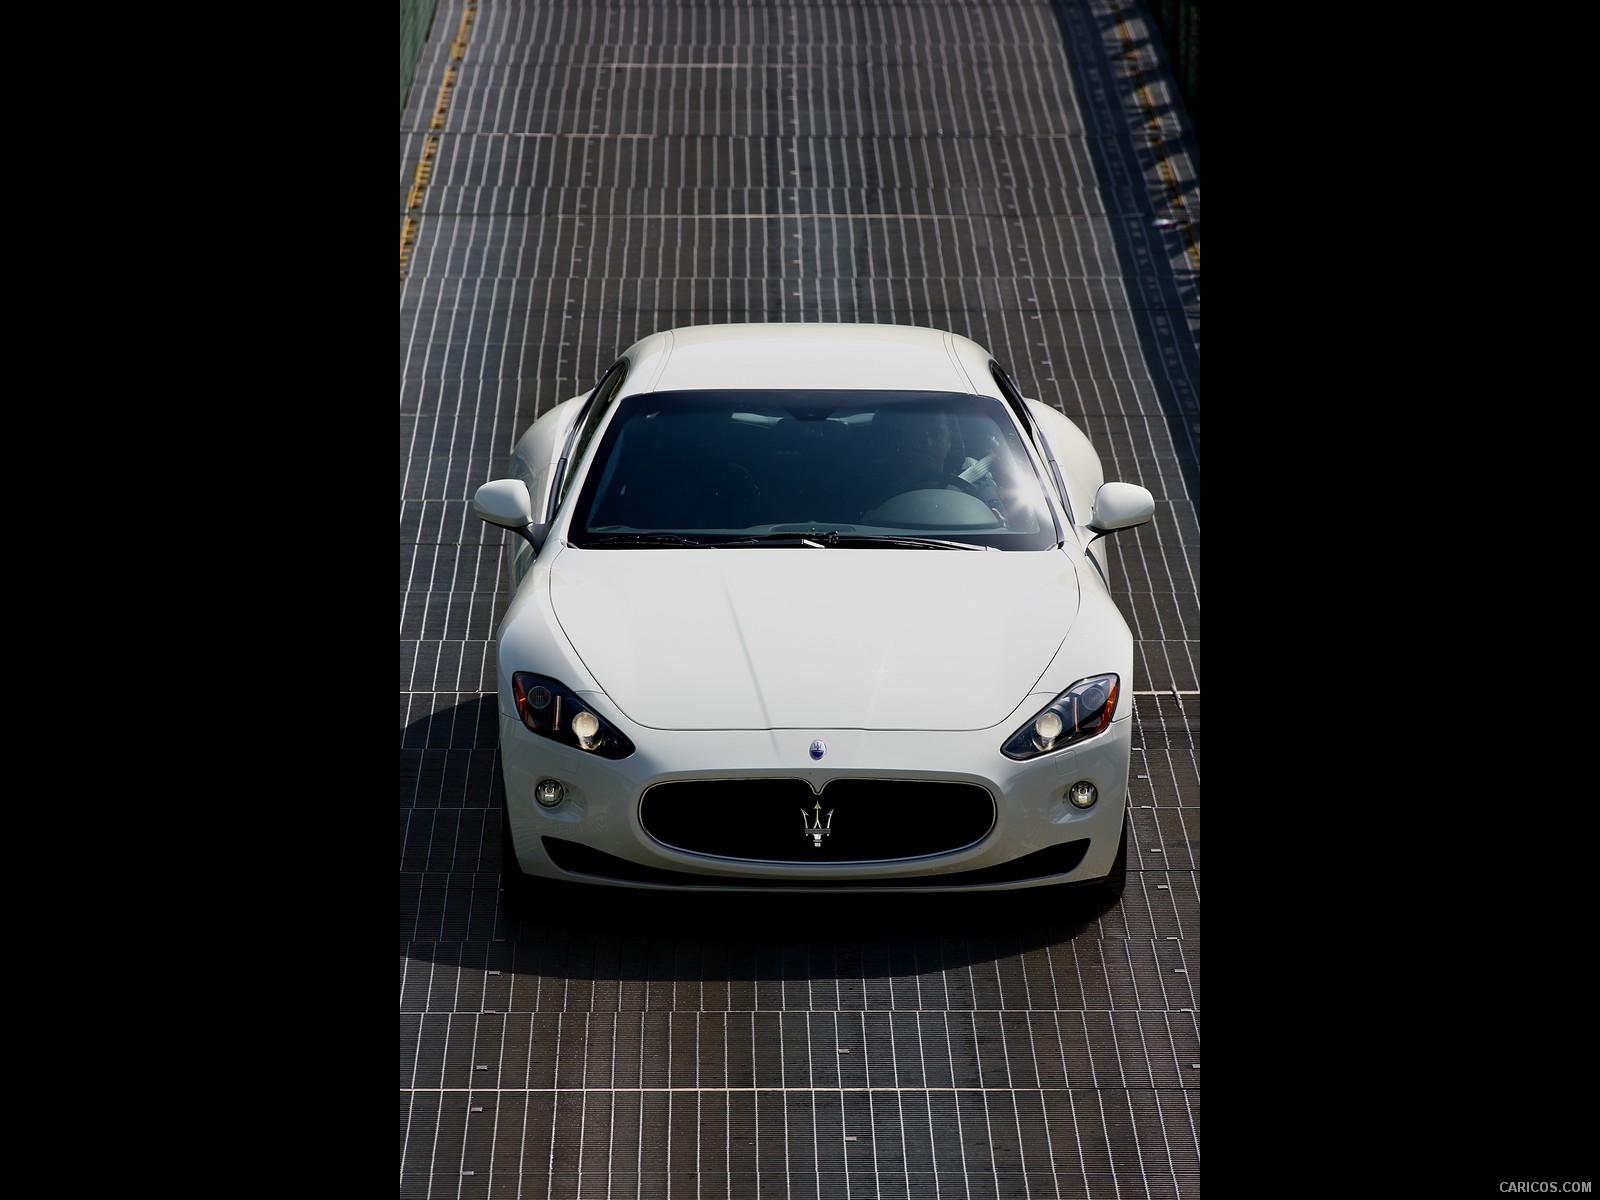 Maserati GranTurismo S (2009)  - Front Angle , #11 of 40